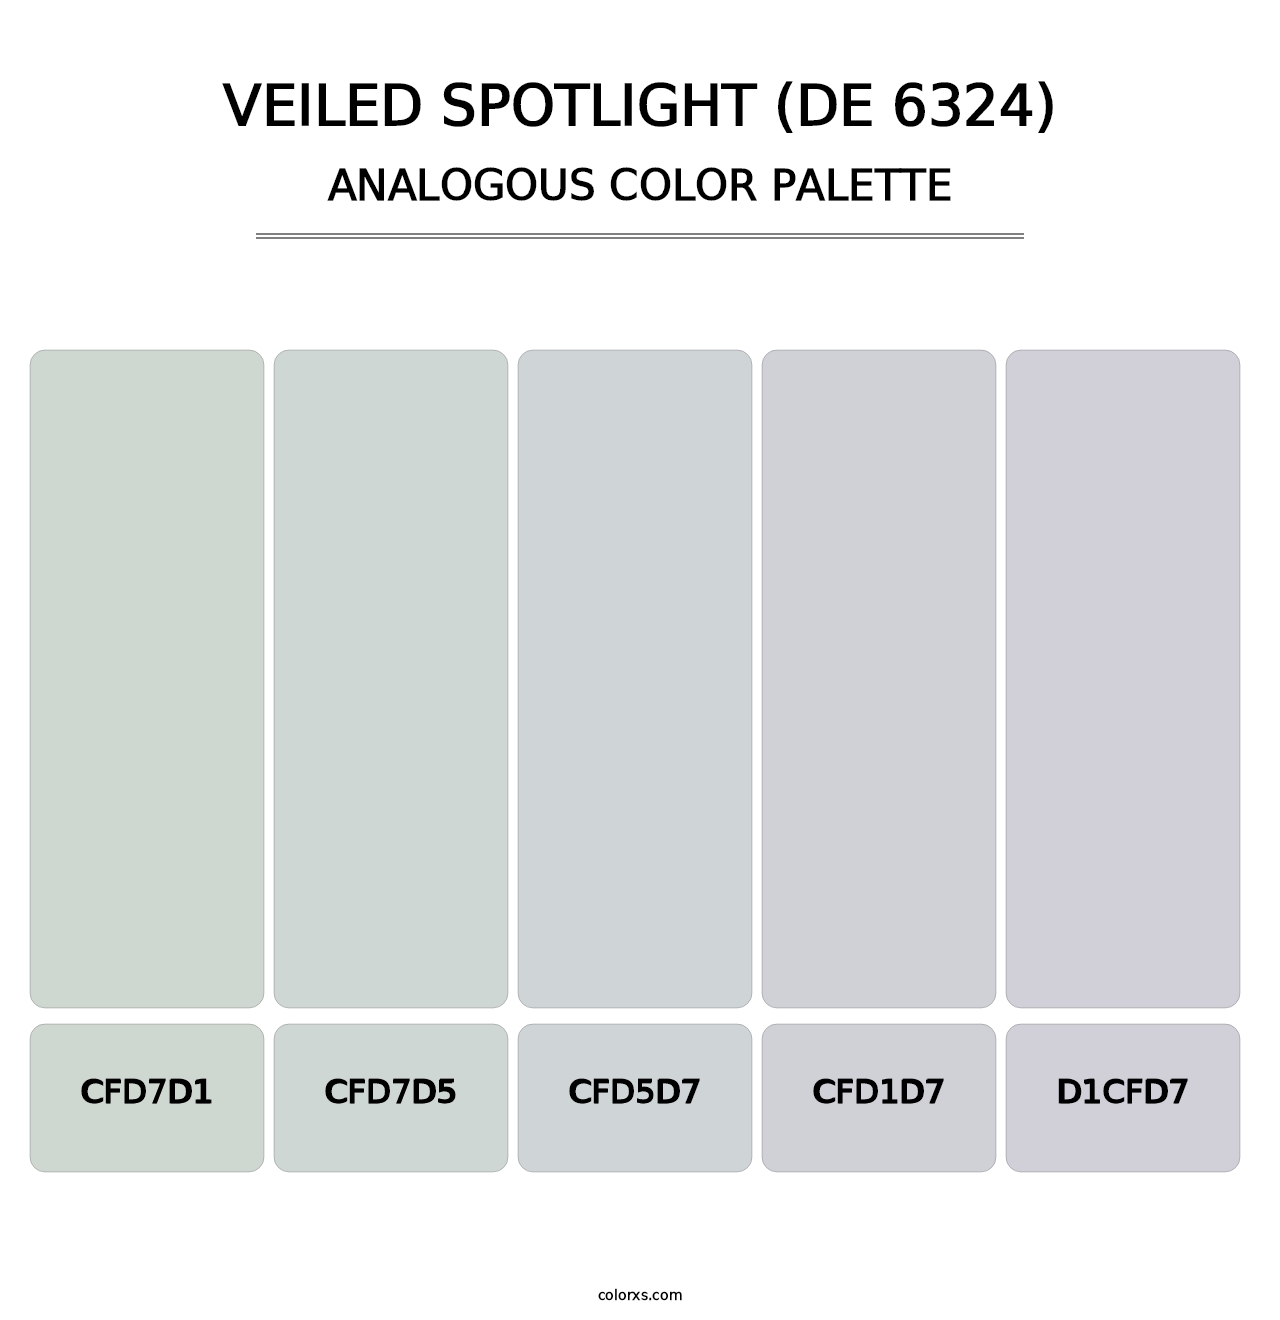 Veiled Spotlight (DE 6324) - Analogous Color Palette